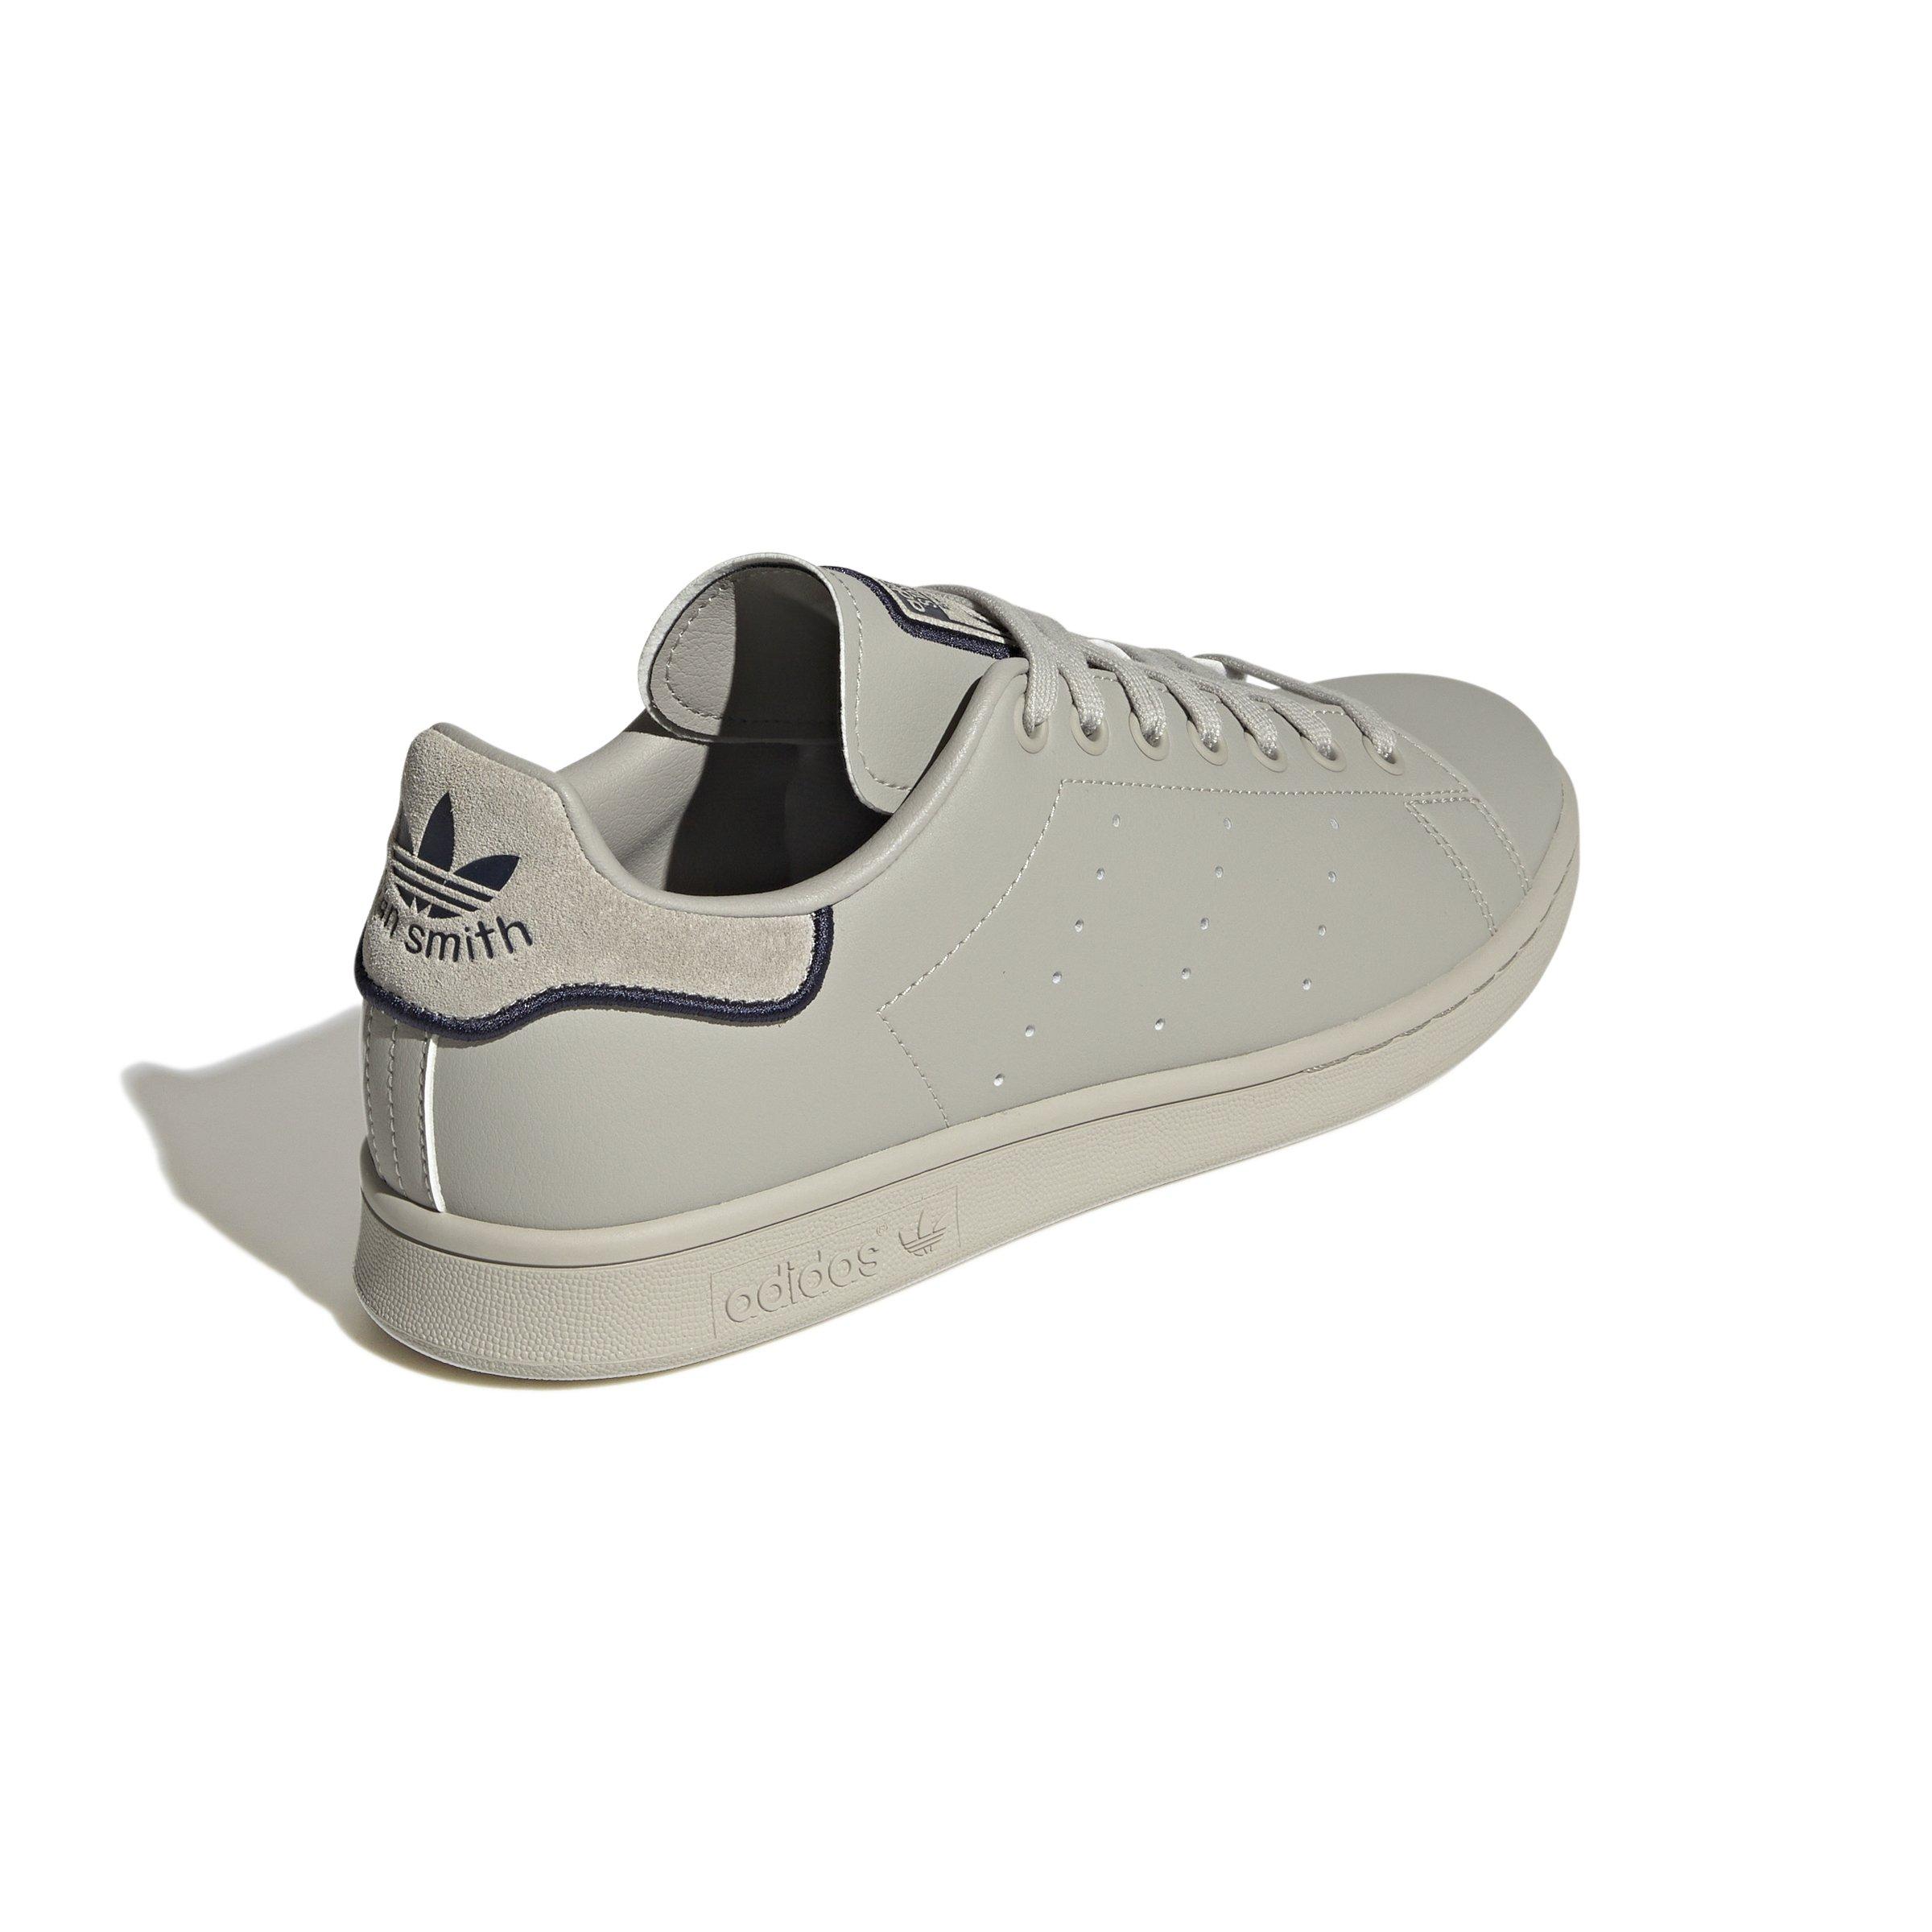 cerebrum Subjektiv niece adidas Originals Stan Smith "Metal Grey/Co Navy/Metallic Grey" Men's Shoe